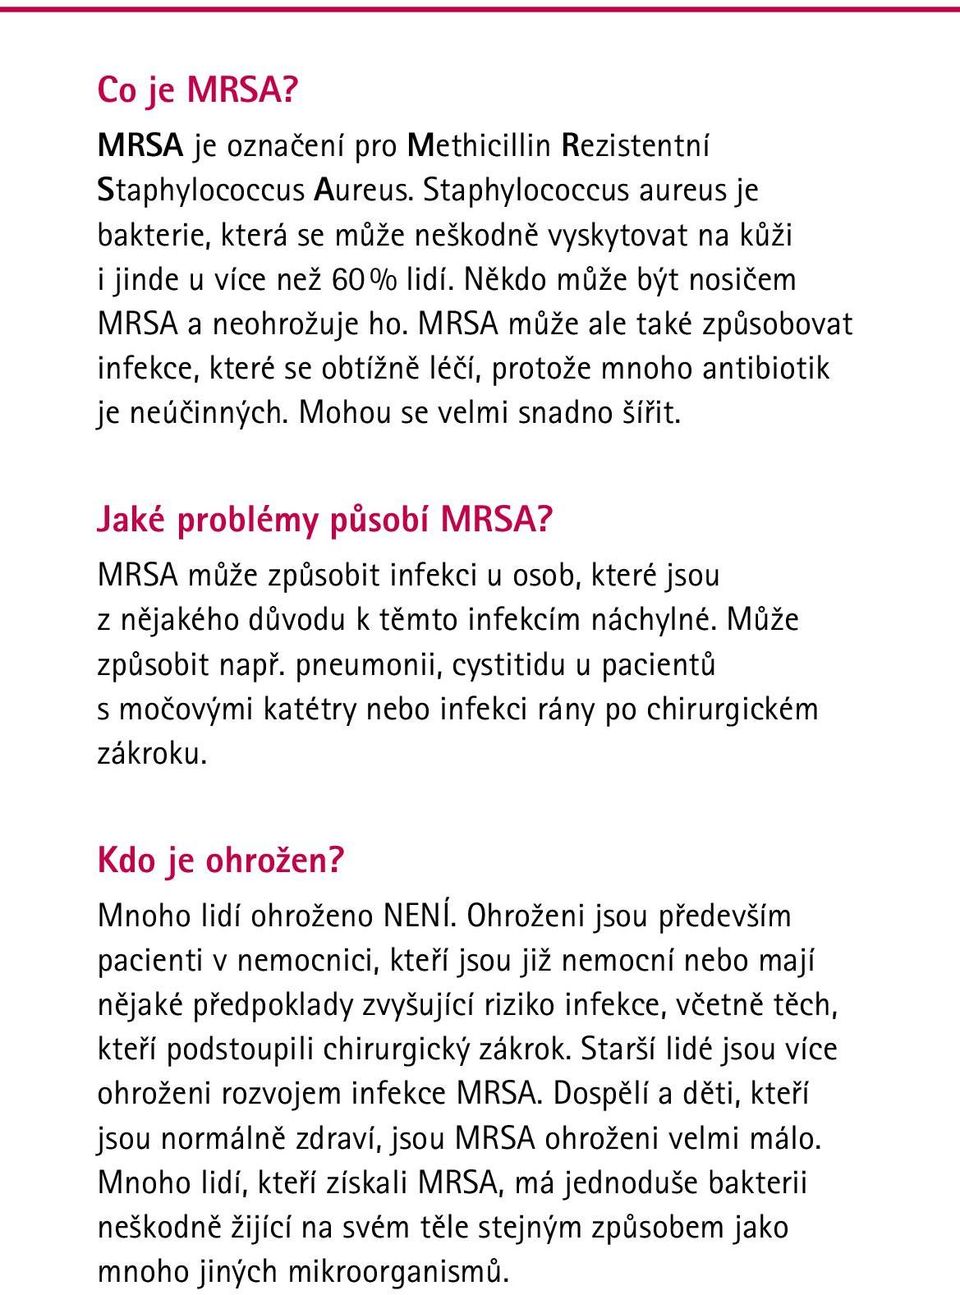 Jaké problémy působí MRSA? MRSA může způsobit infekci u osob, které jsou z nějakého důvodu k těmto infekcím náchylné. Může způsobit např.